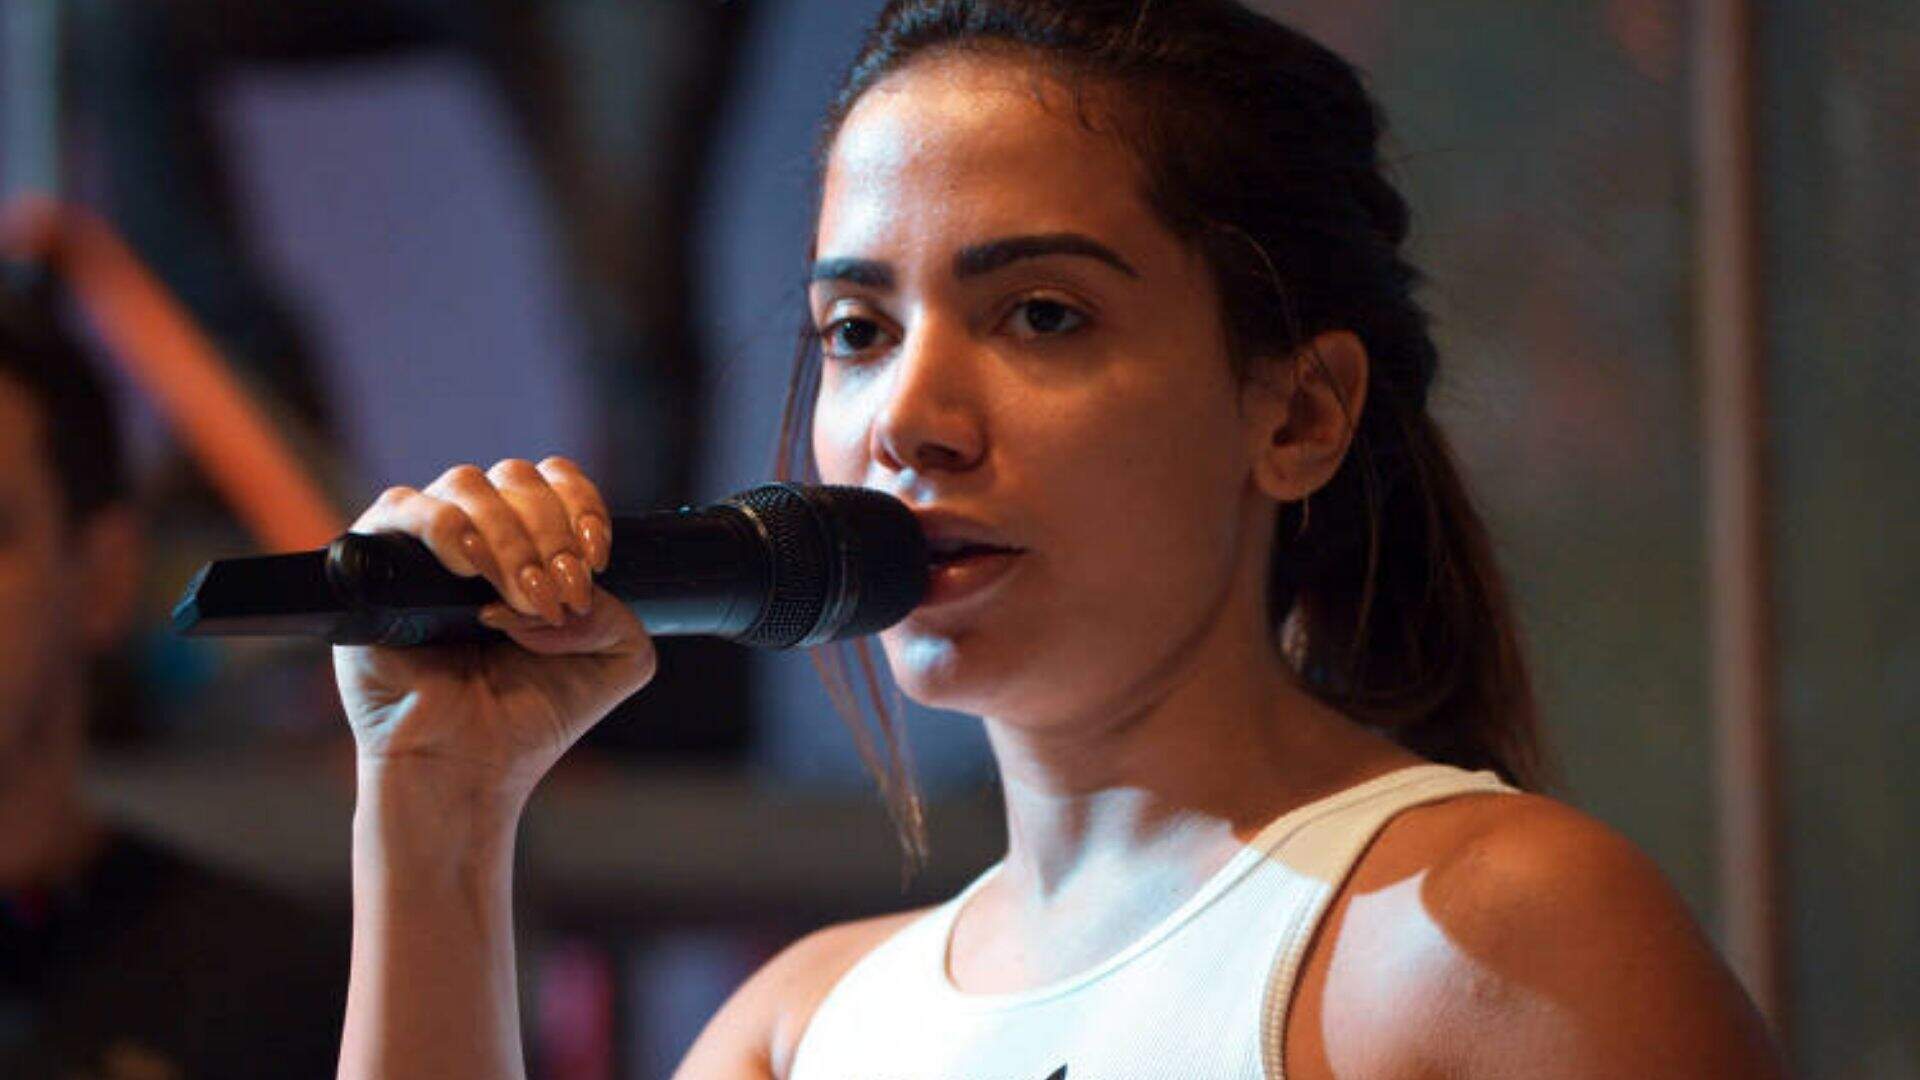 Quem vai sair do BBB 22? Anitta se revolta com “resultado antecipado” e detona: “Sério?” - Metropolitana FM